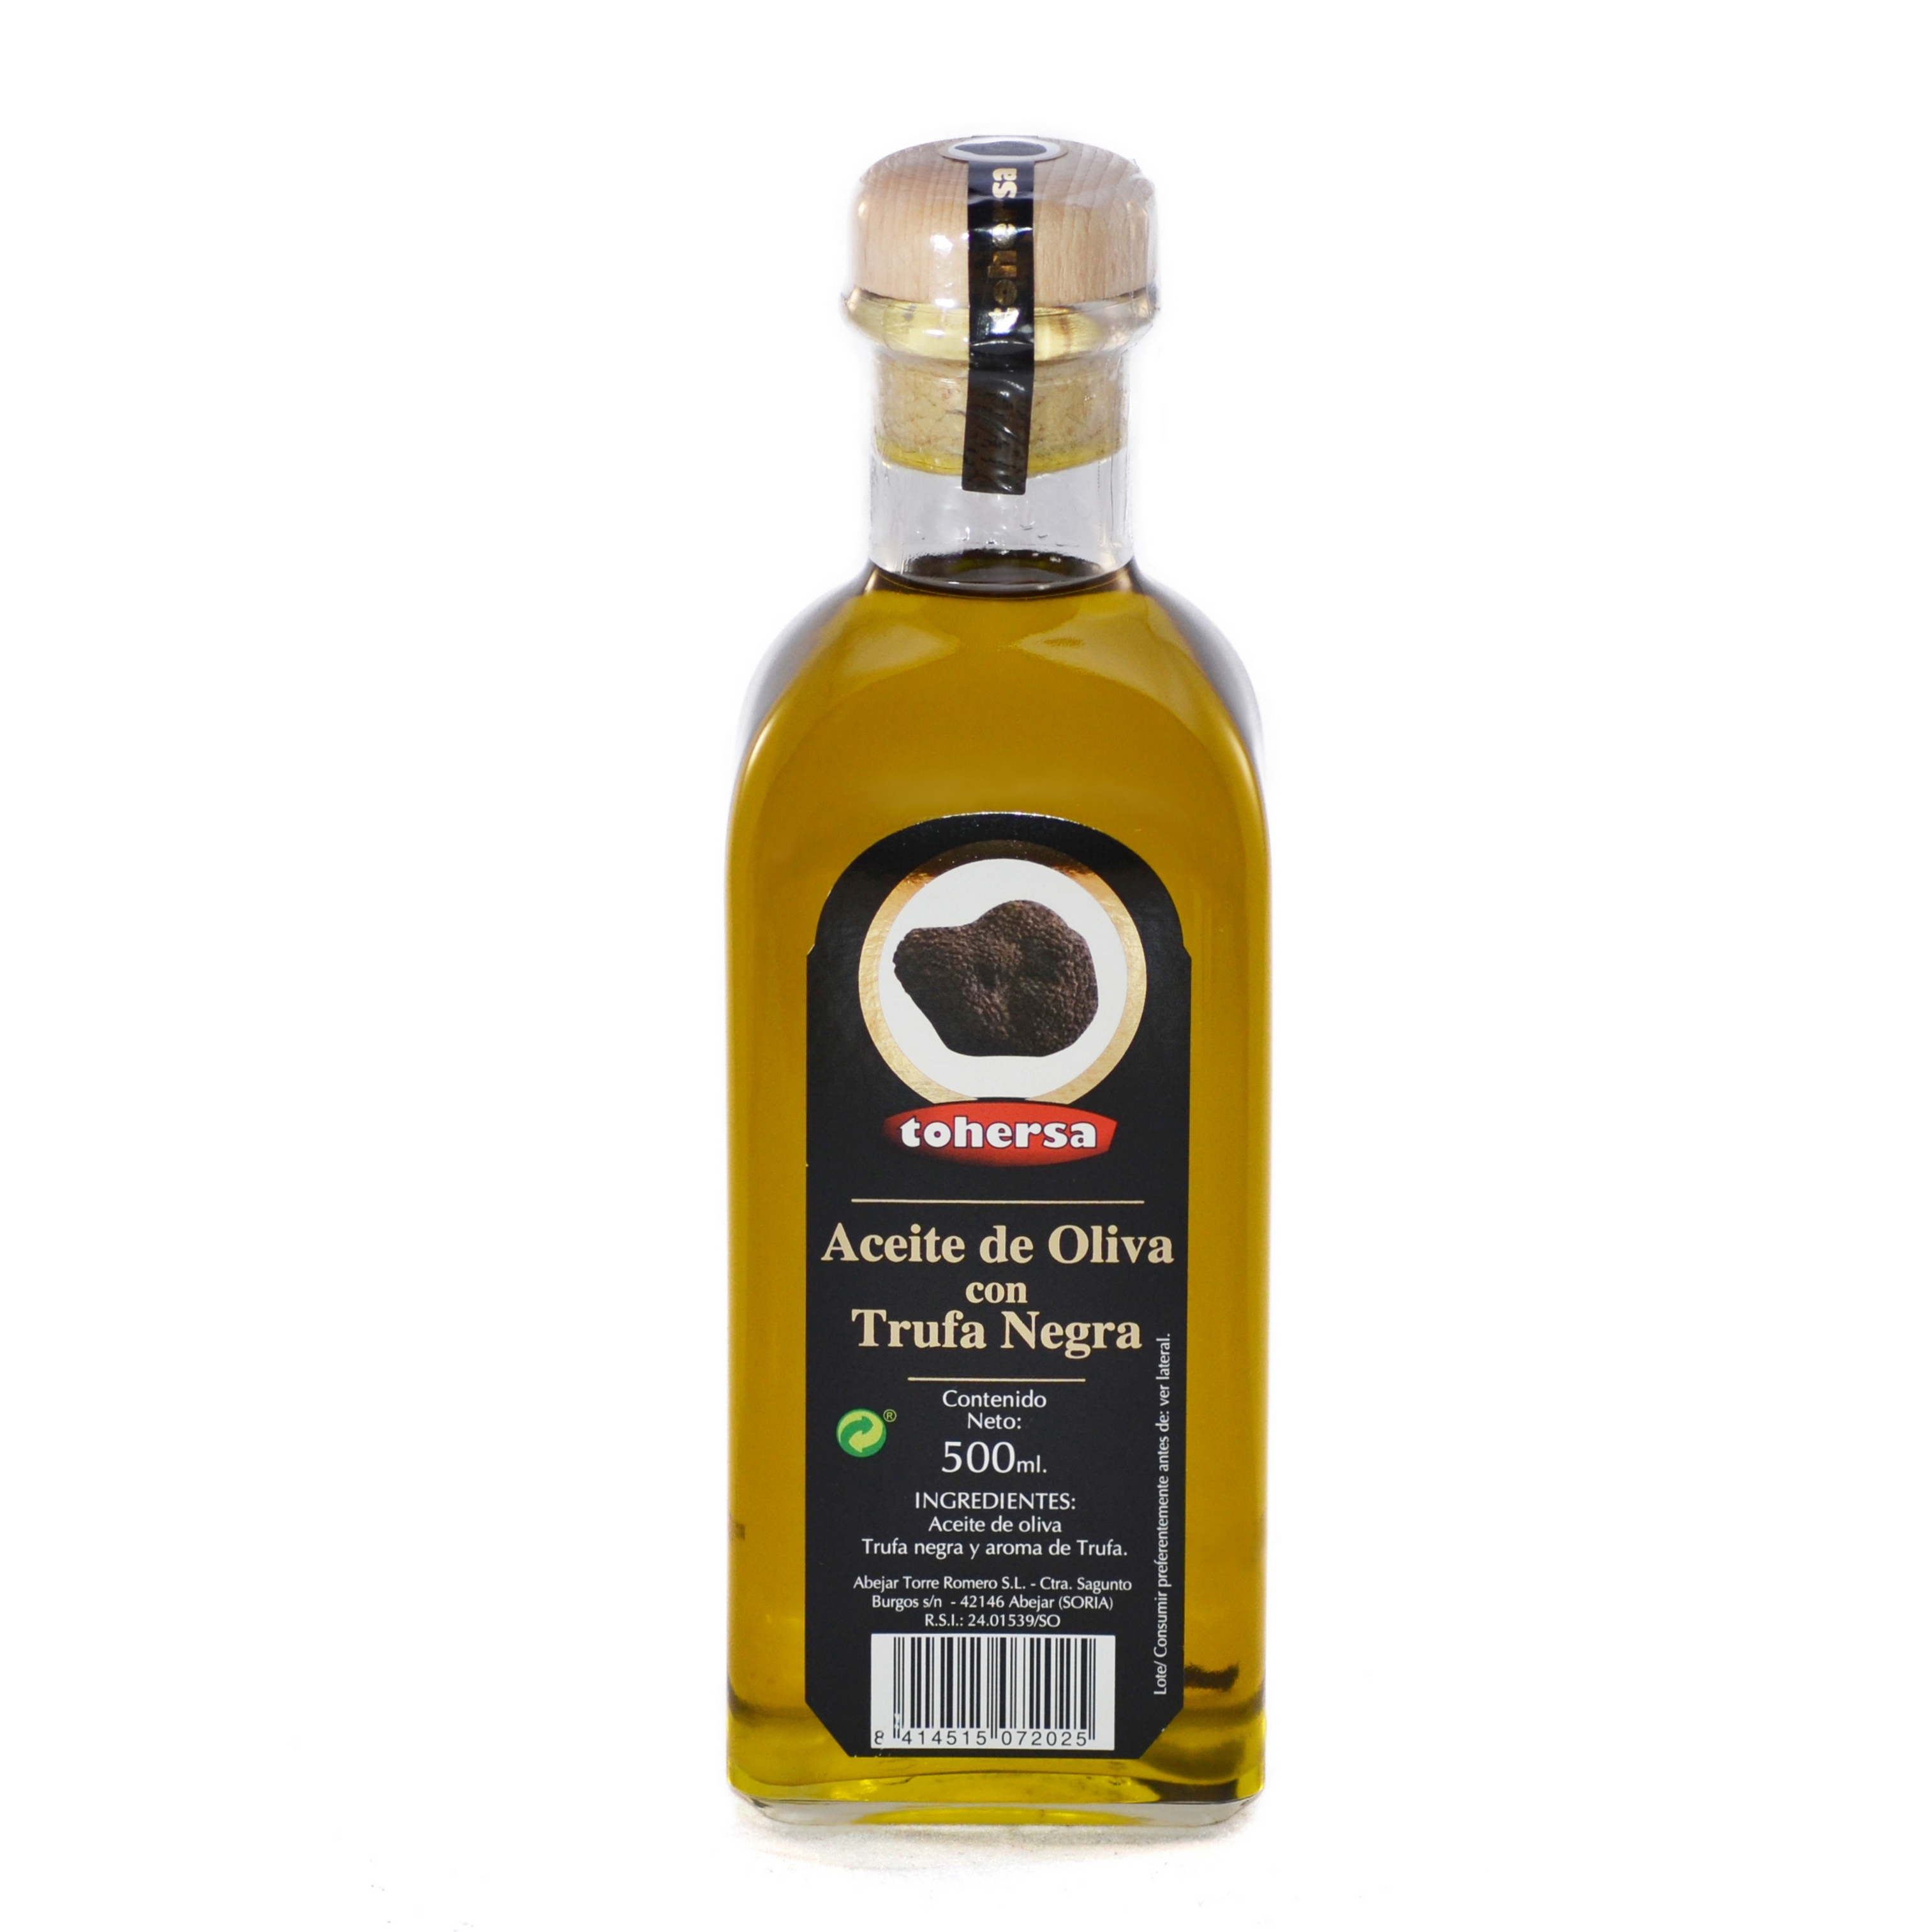 Comprar Aceite de Oliva con aroma de Trufa Negra al mejor precio ...